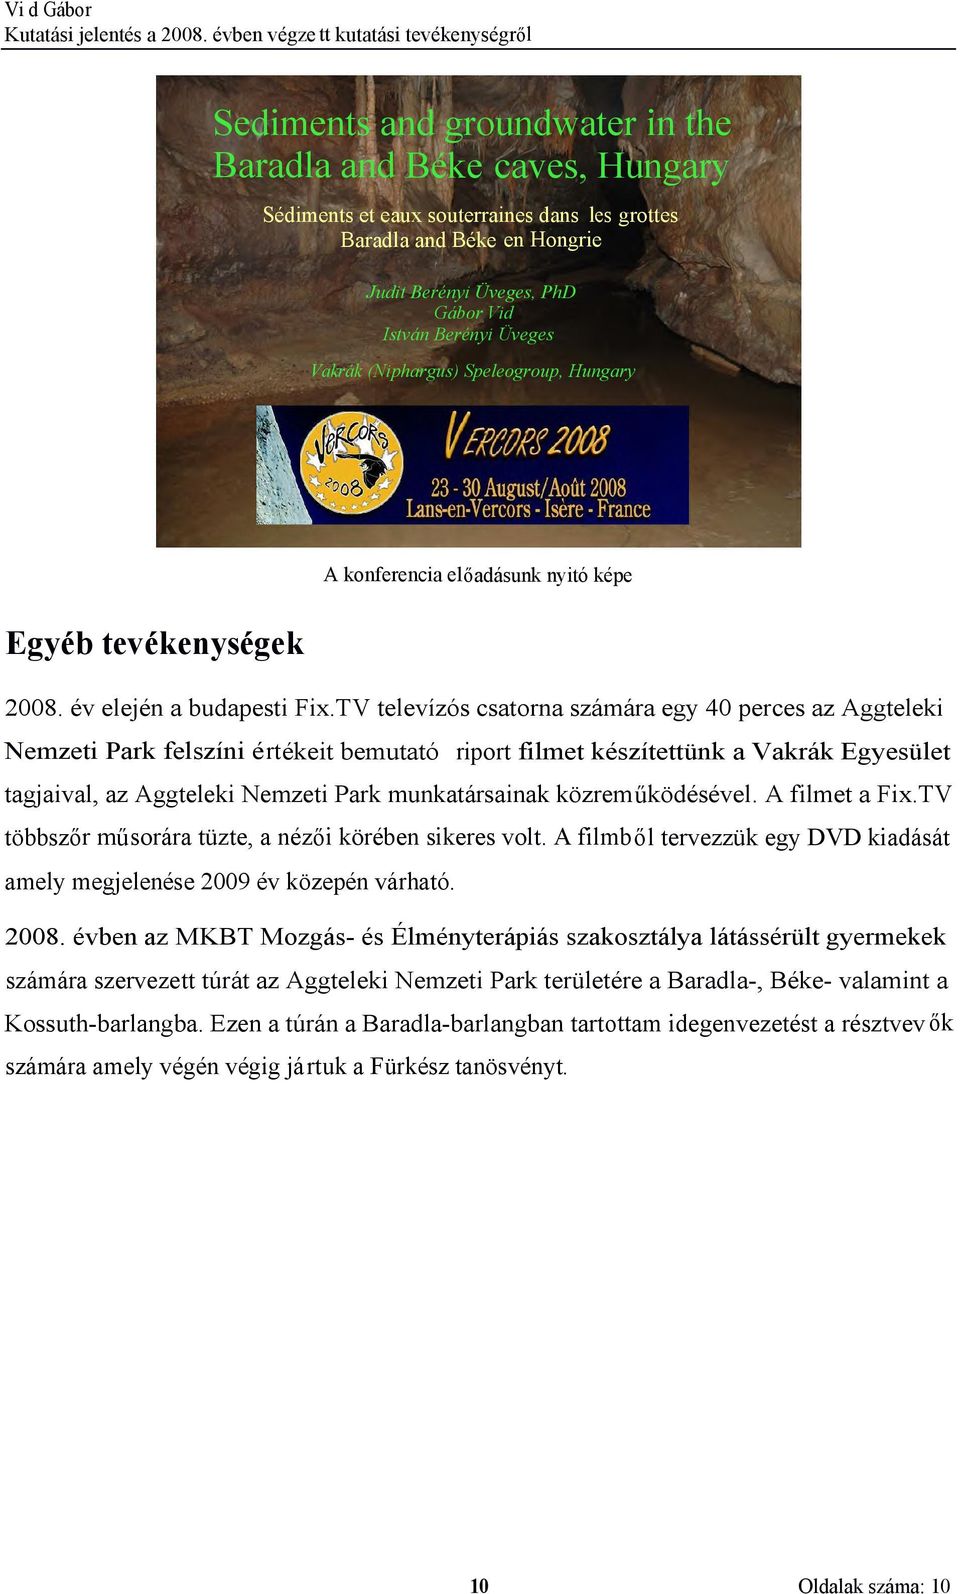 TV televízós csatorna számára egy 40 perces az Aggteleki Nemzeti Park felszíni értékeit bemutató riport filmet készítettünk a Vakrák Egyesület tagjaival, az Aggteleki Nemzeti Park munkatársainak